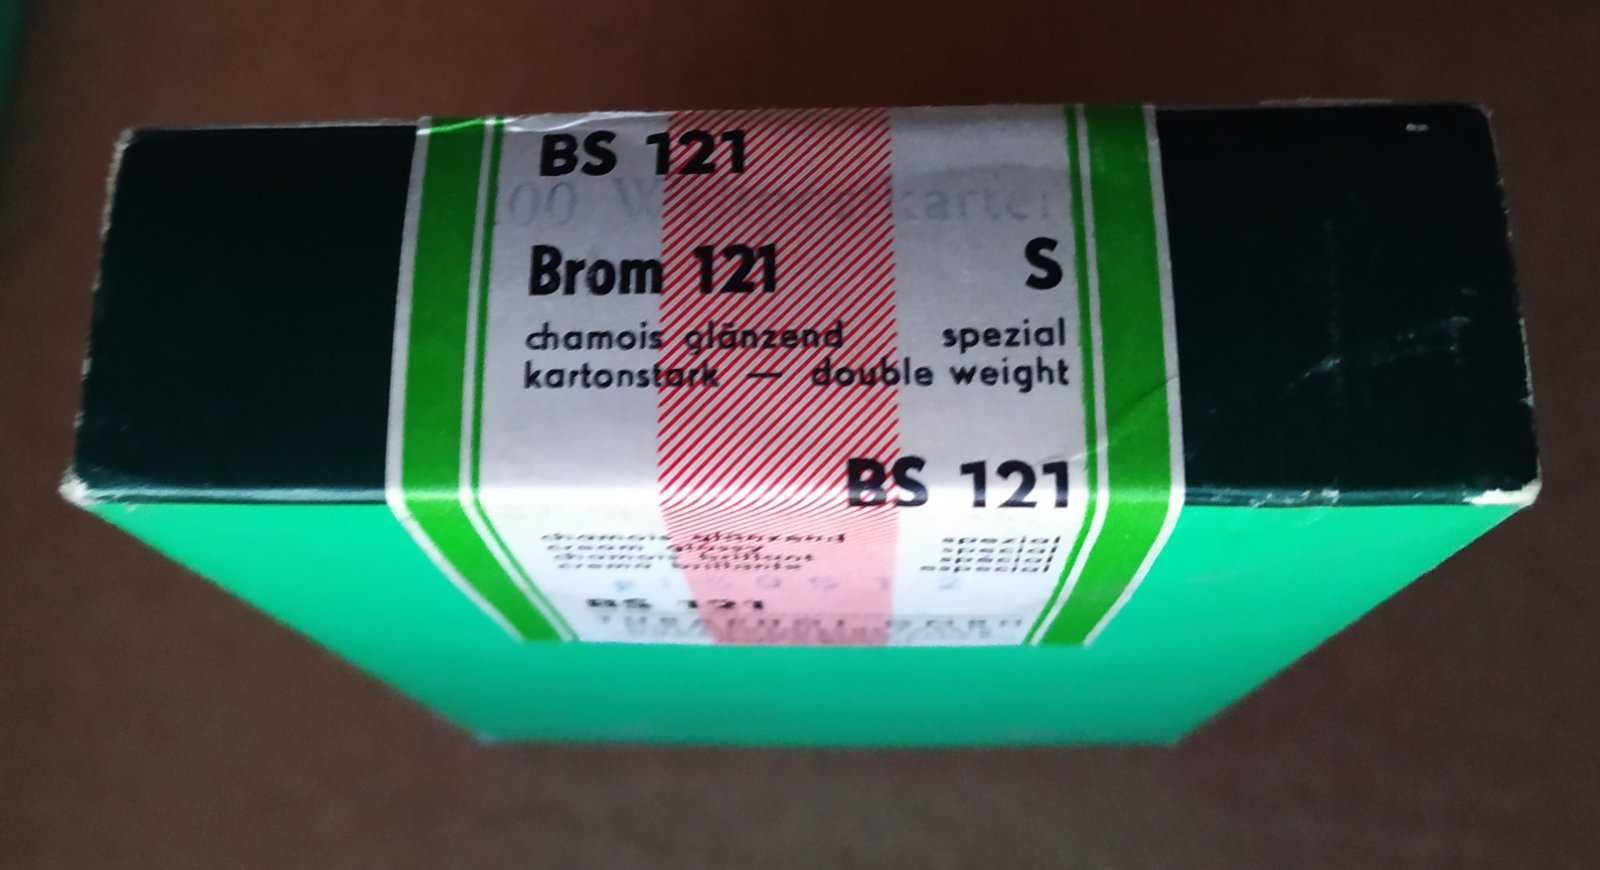 Фотопапір TURA Brom 121 S глянсова картон Німеччина АНТИКВАРІАТ